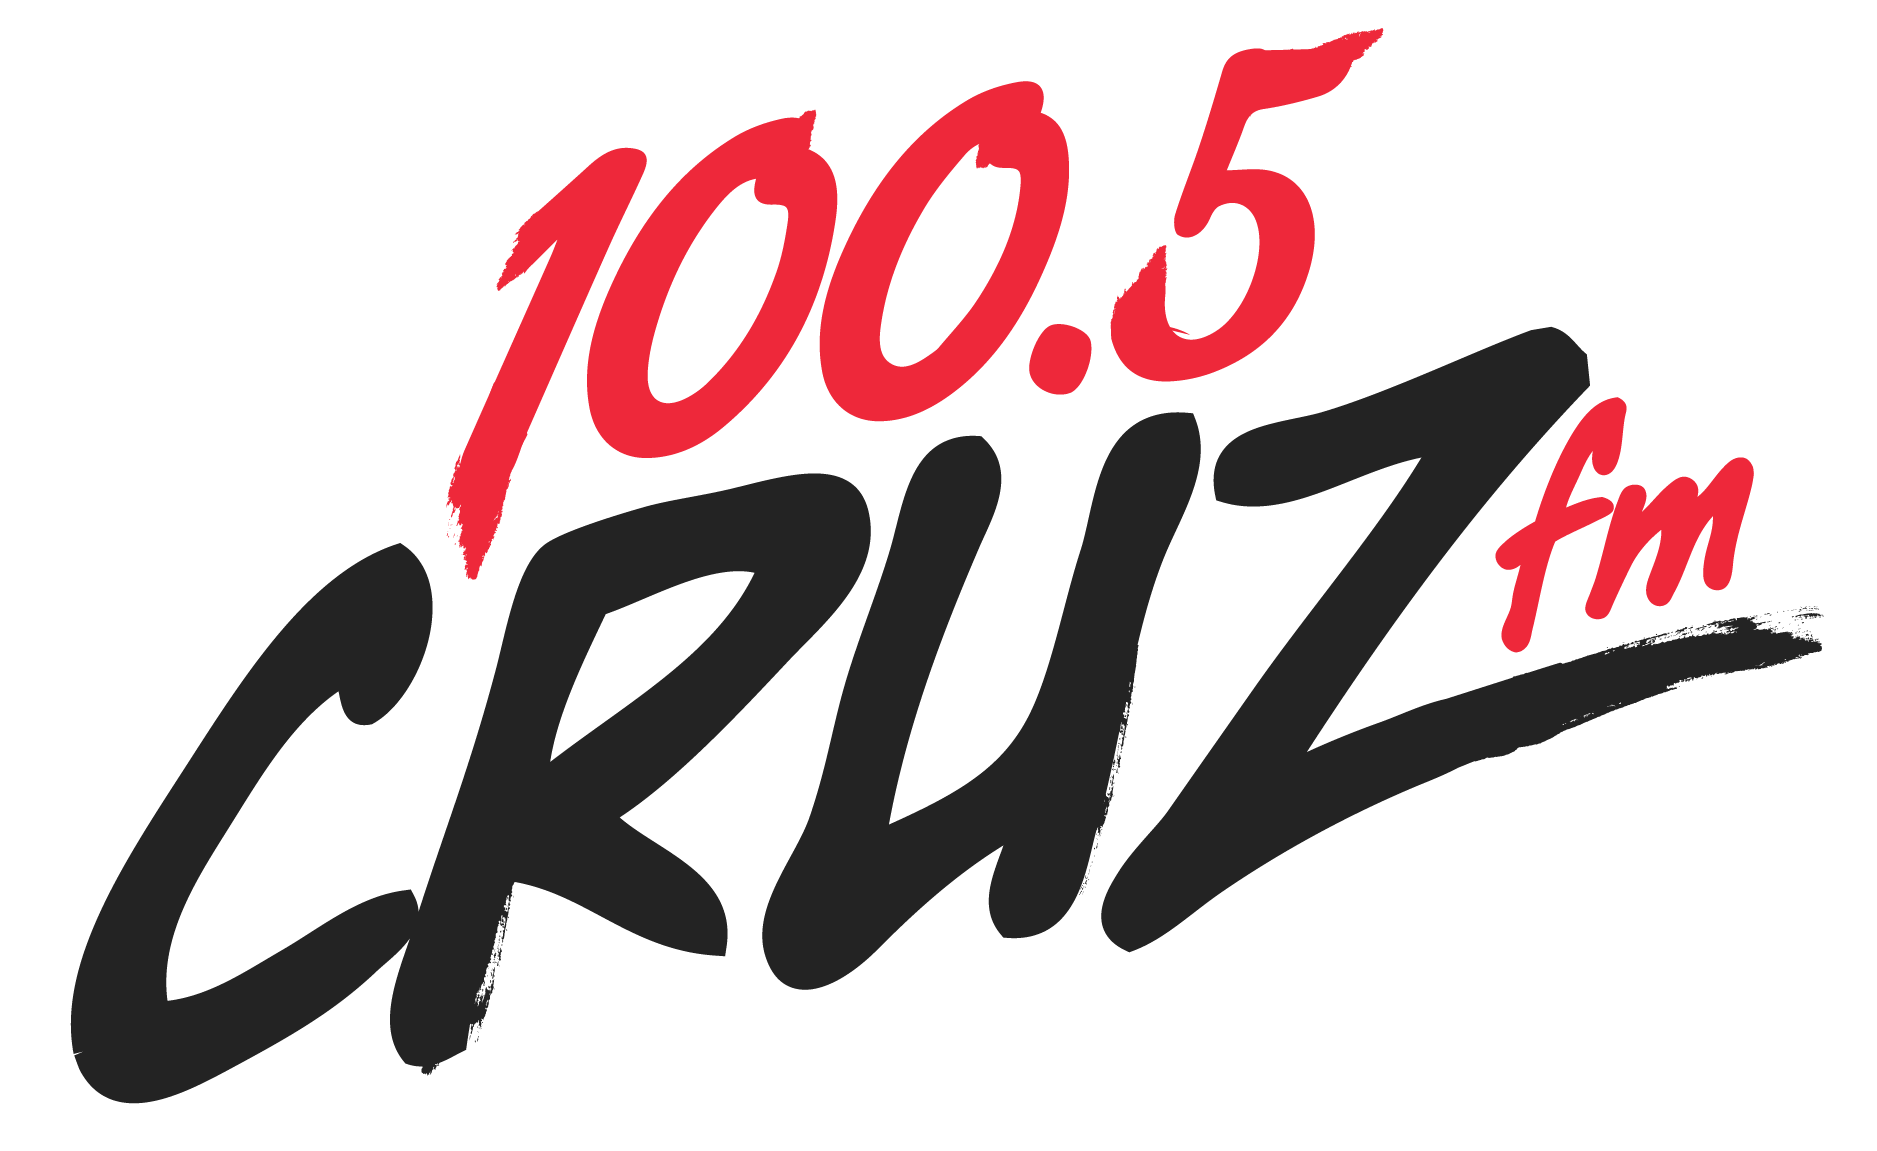 Mix 103.7 & 100.5 Cruz FM